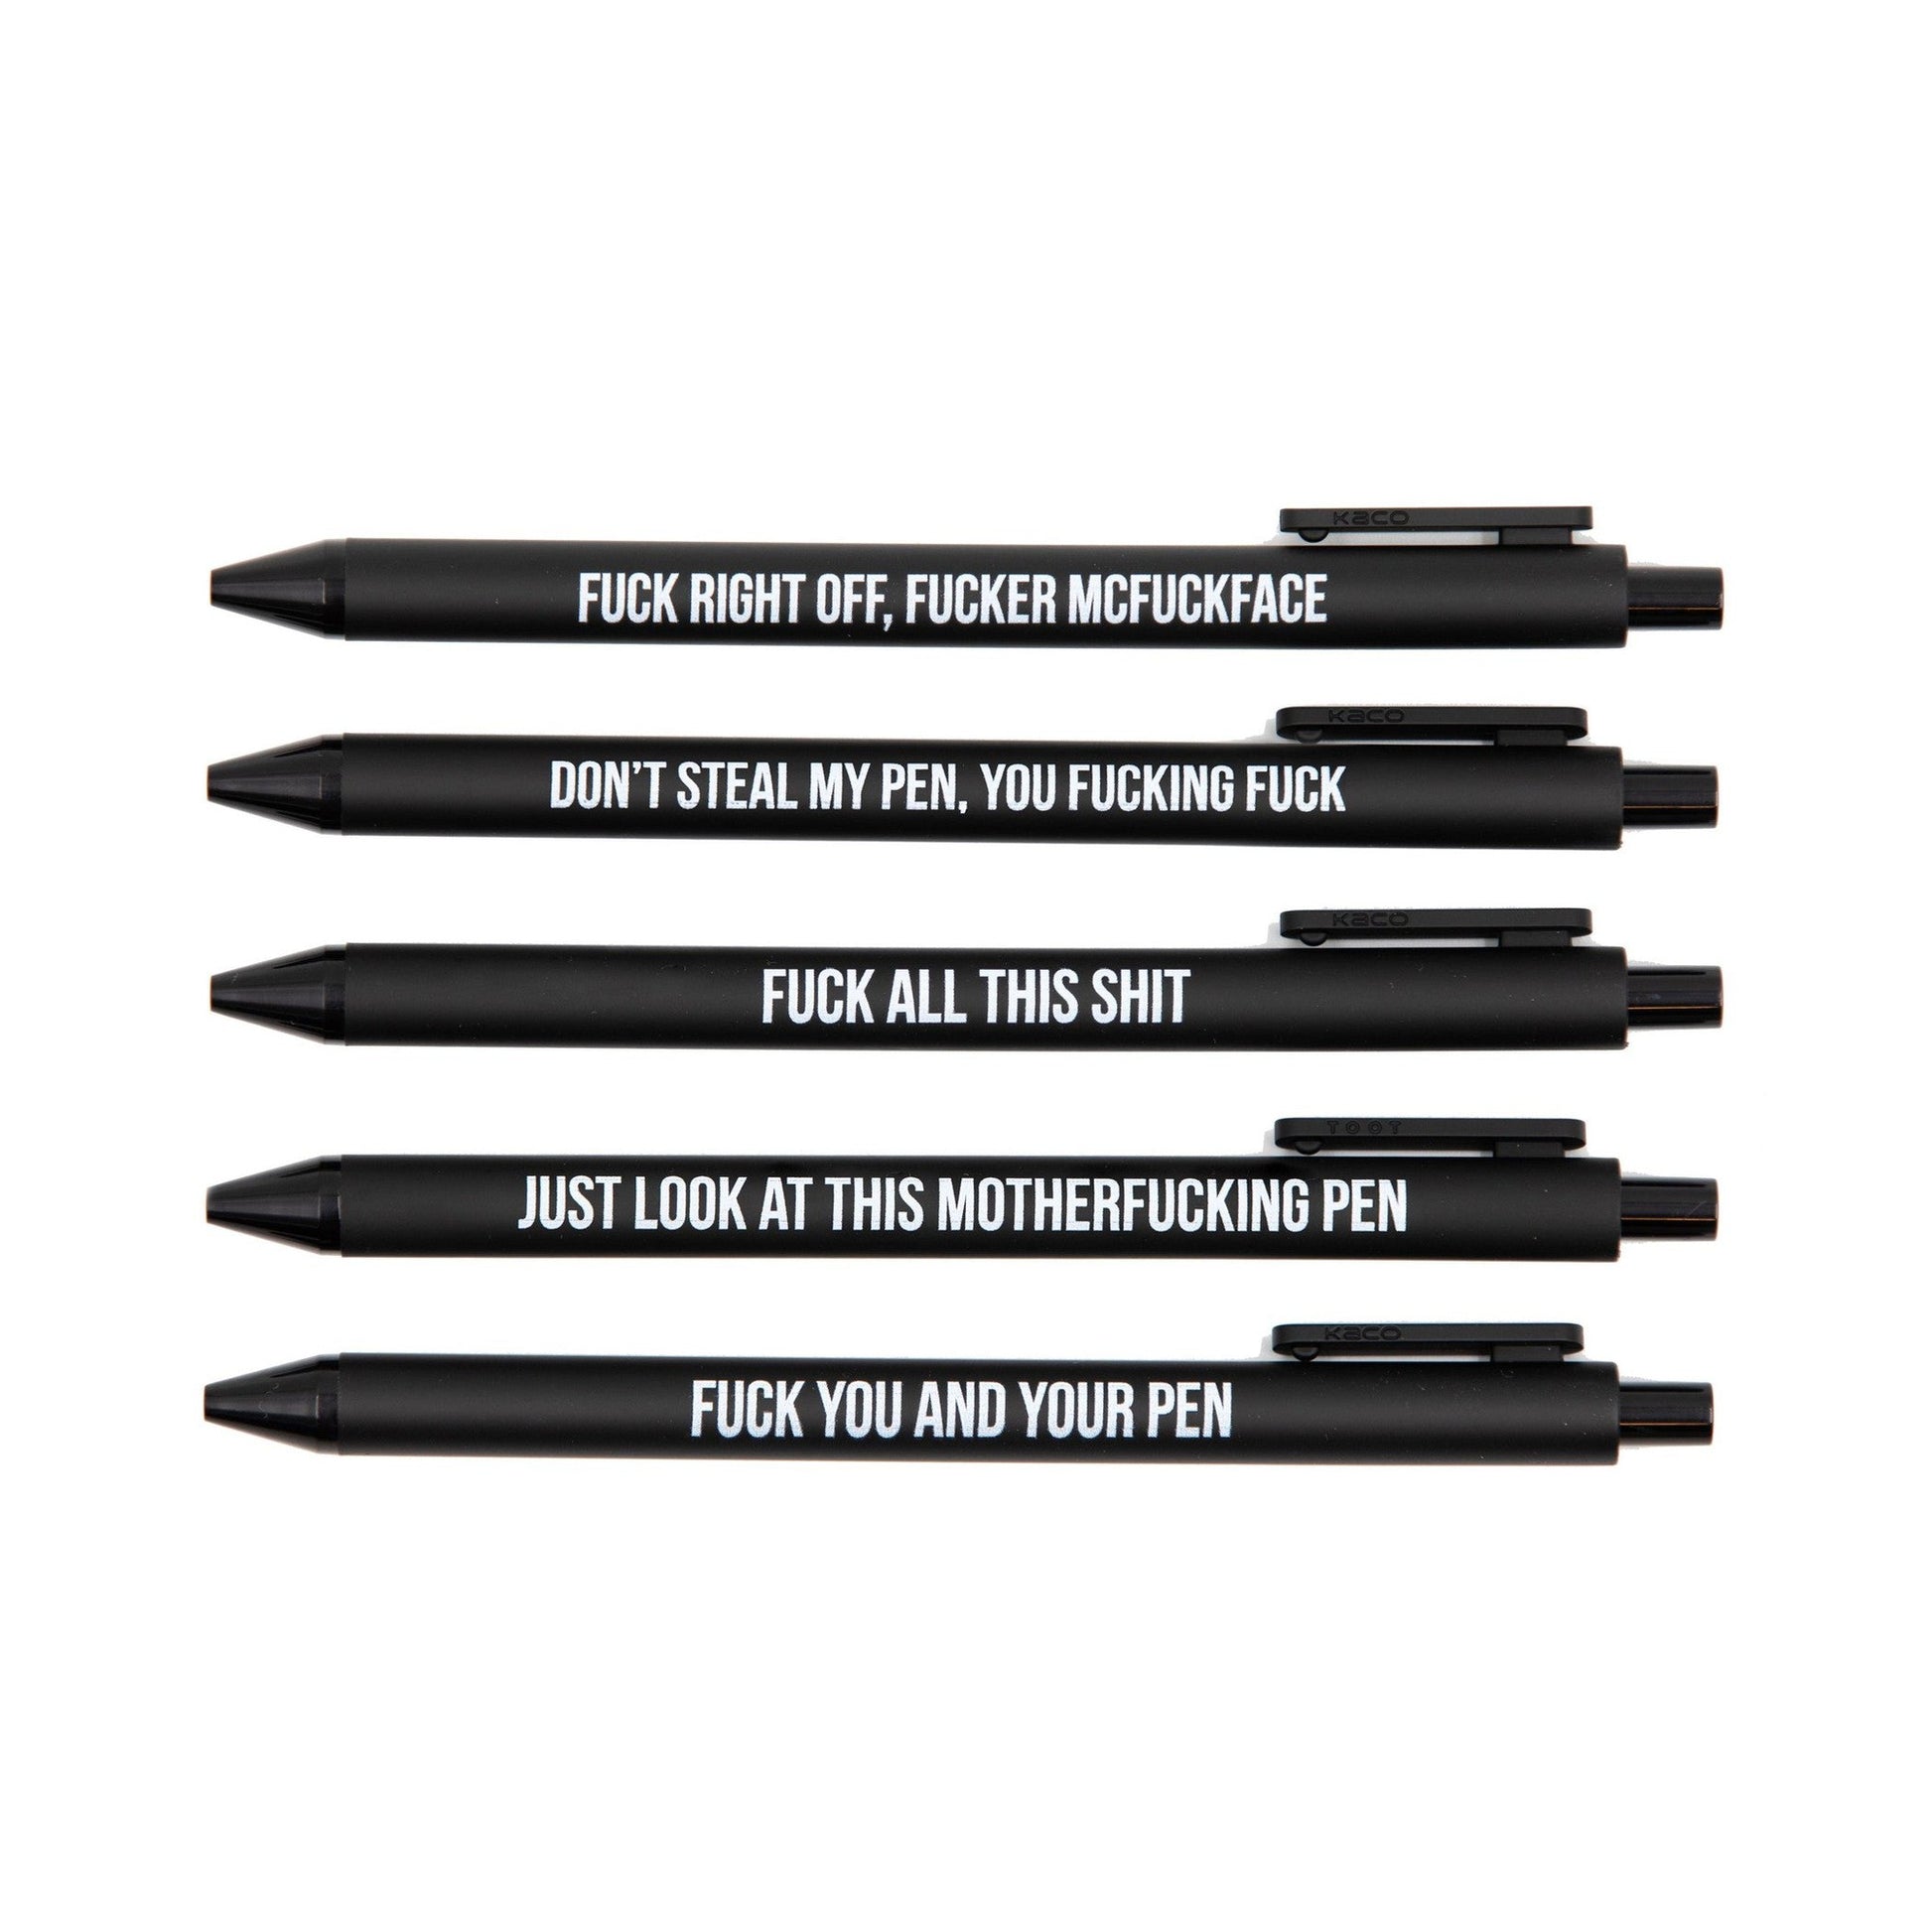 Swear Like a Fatherfucking Lady Pen Set, 5 Sweary Gel Pens